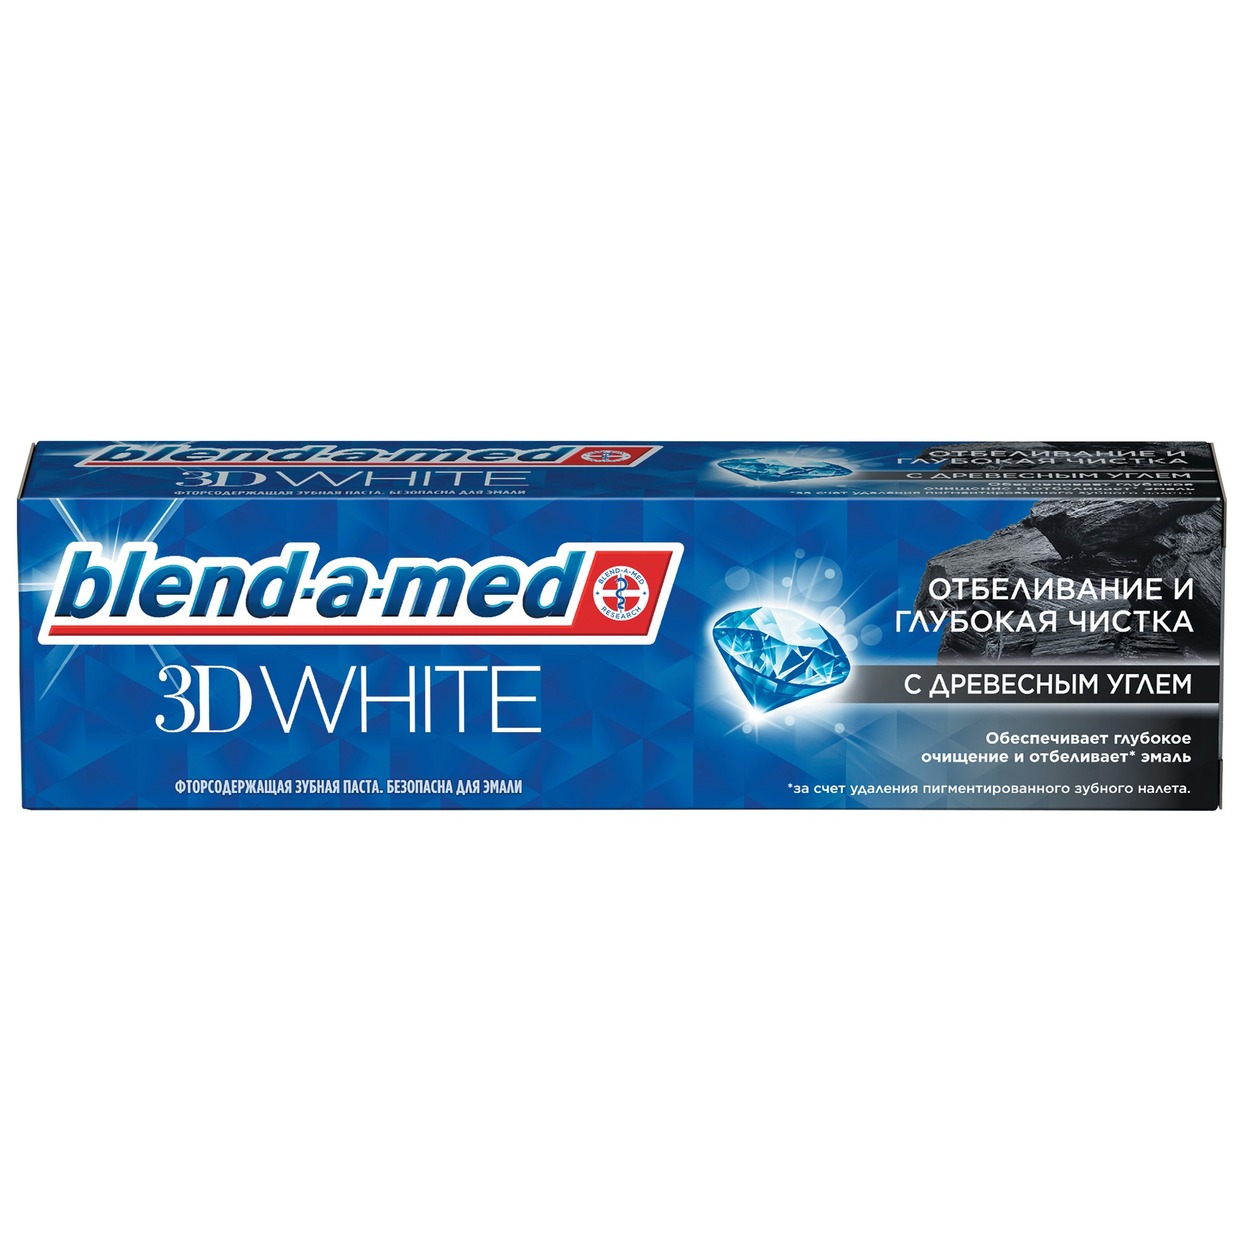 BLEND-A-MED Зубная паста 3DW Отбеливание и глубокая чистка Древесным углем 100мл